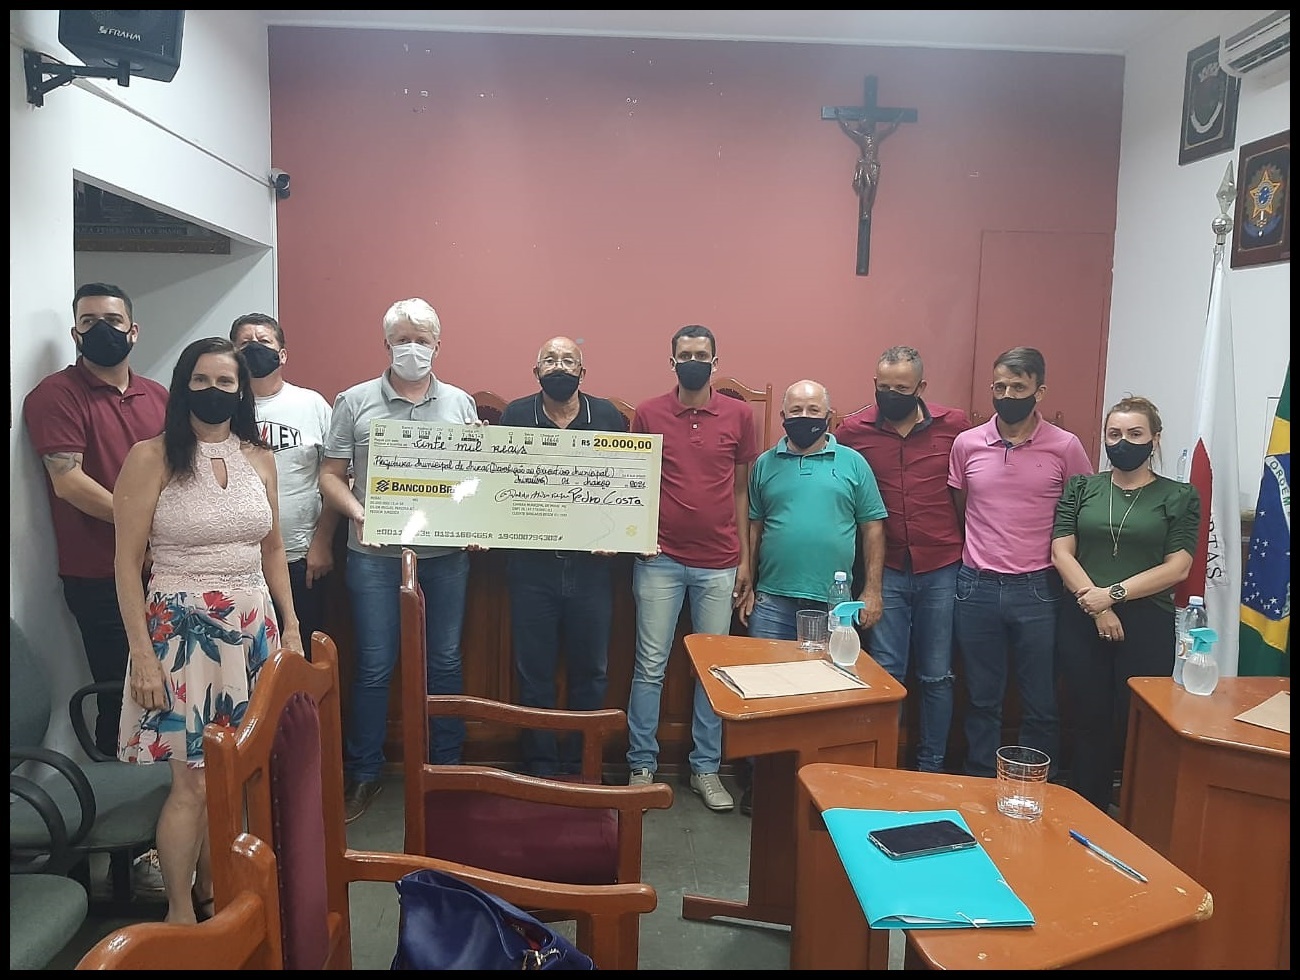 Câmara Municipal de Miraí repassou aos cofres públicos o valor de R$20.000,00